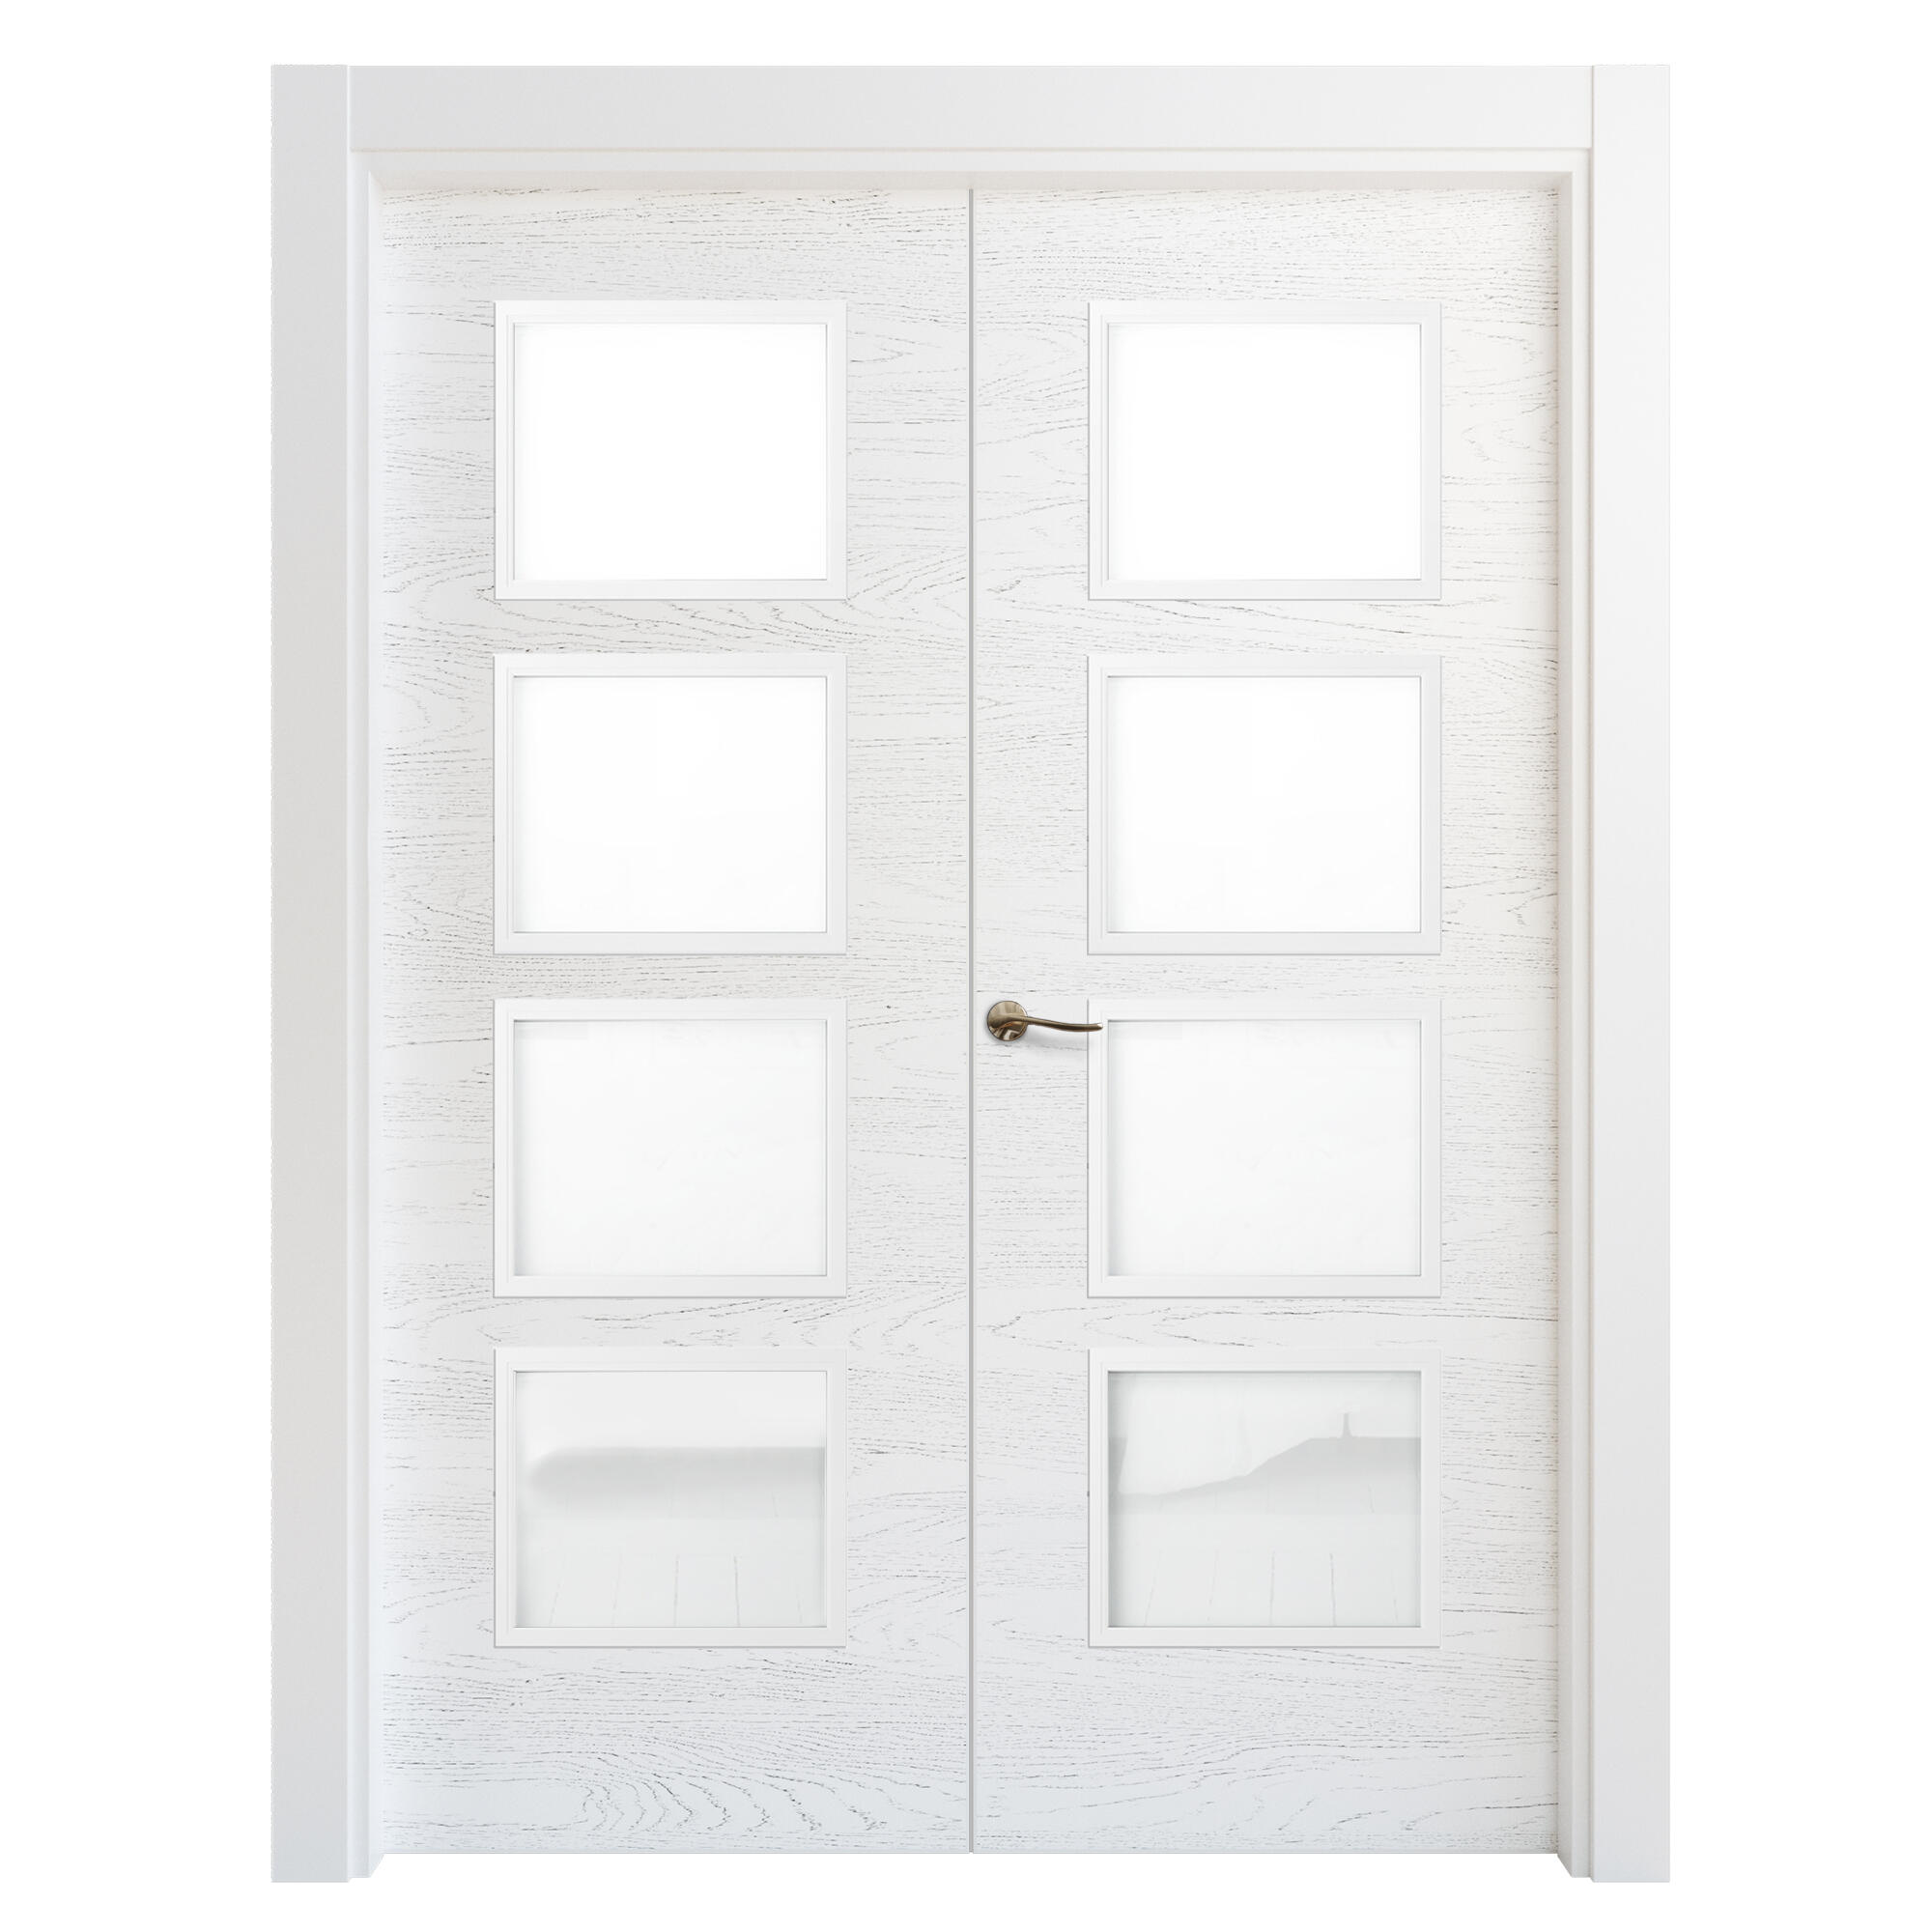 Puerta doble acristalada bari premium blanco i 9x145 cm